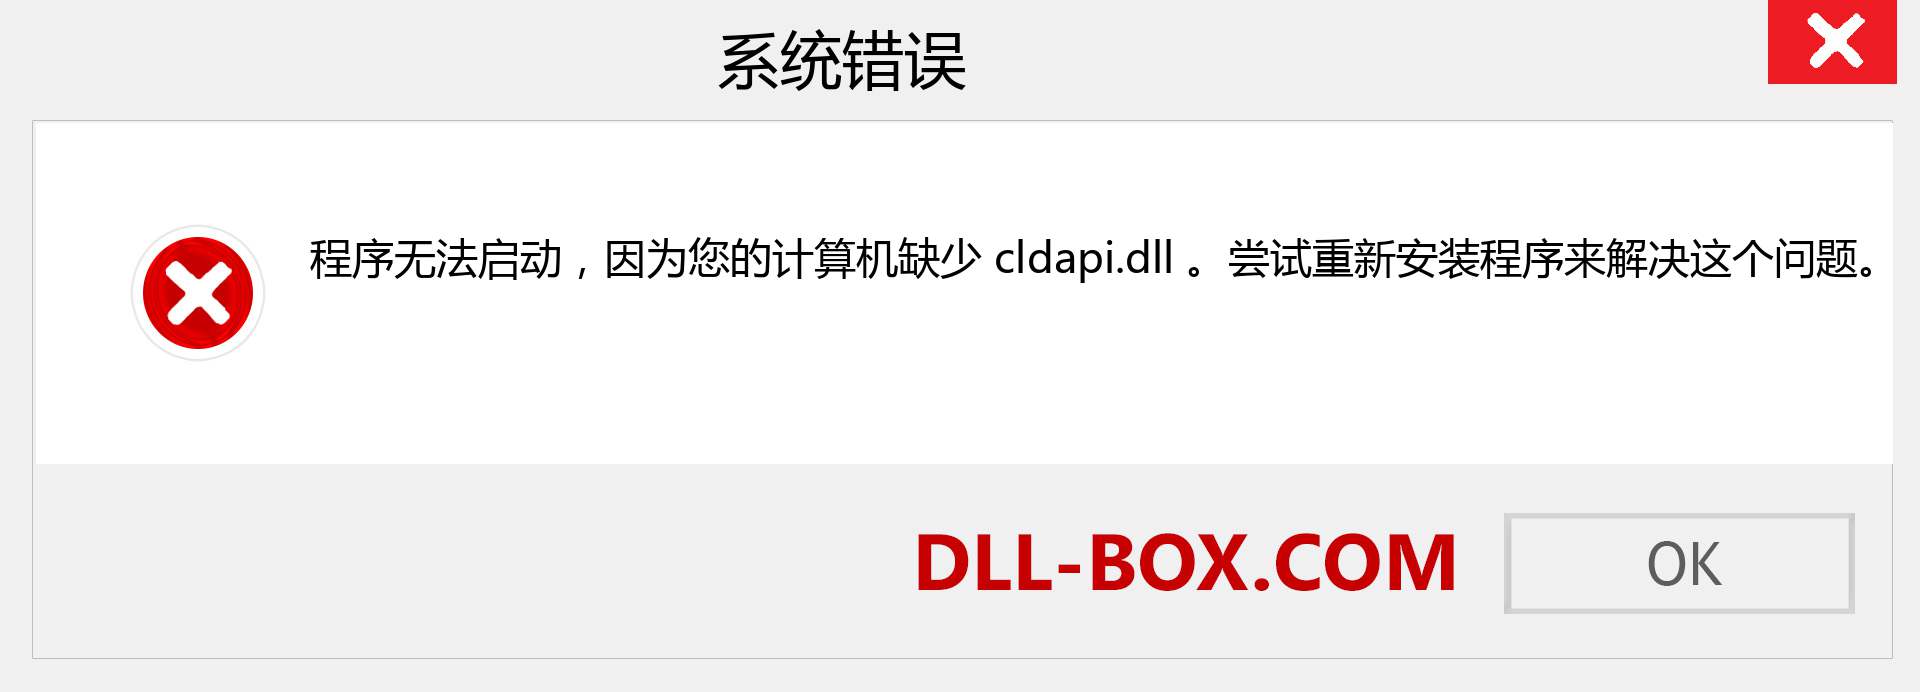 cldapi.dll 文件丢失？。 适用于 Windows 7、8、10 的下载 - 修复 Windows、照片、图像上的 cldapi dll 丢失错误